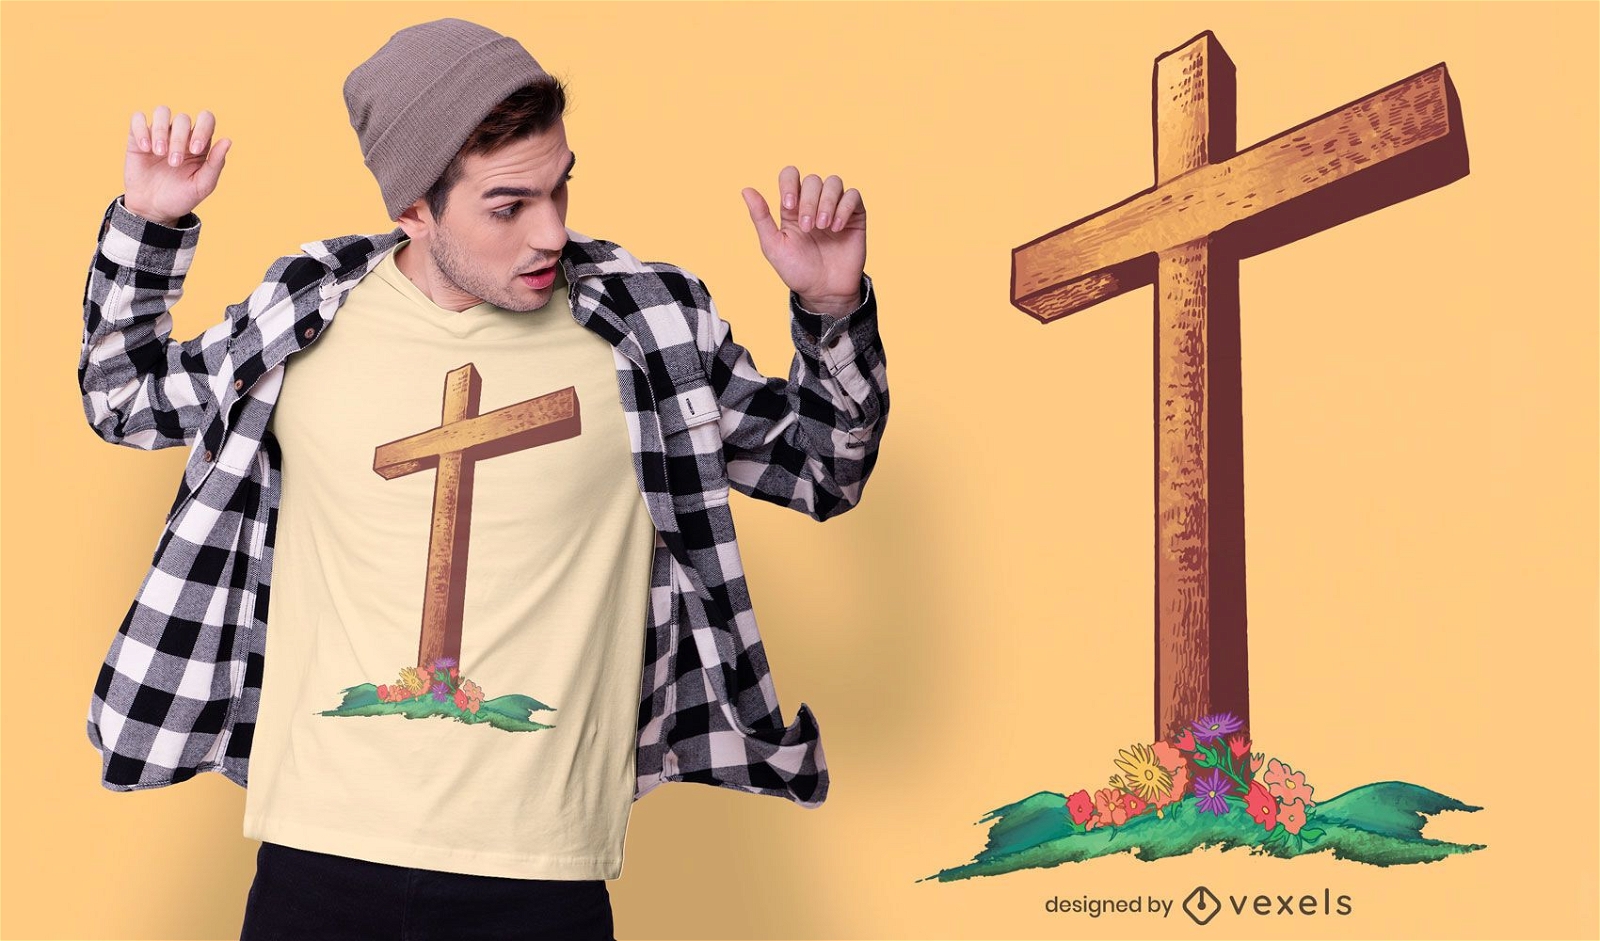 Dise?o de camiseta de cruz de madera cristiana.